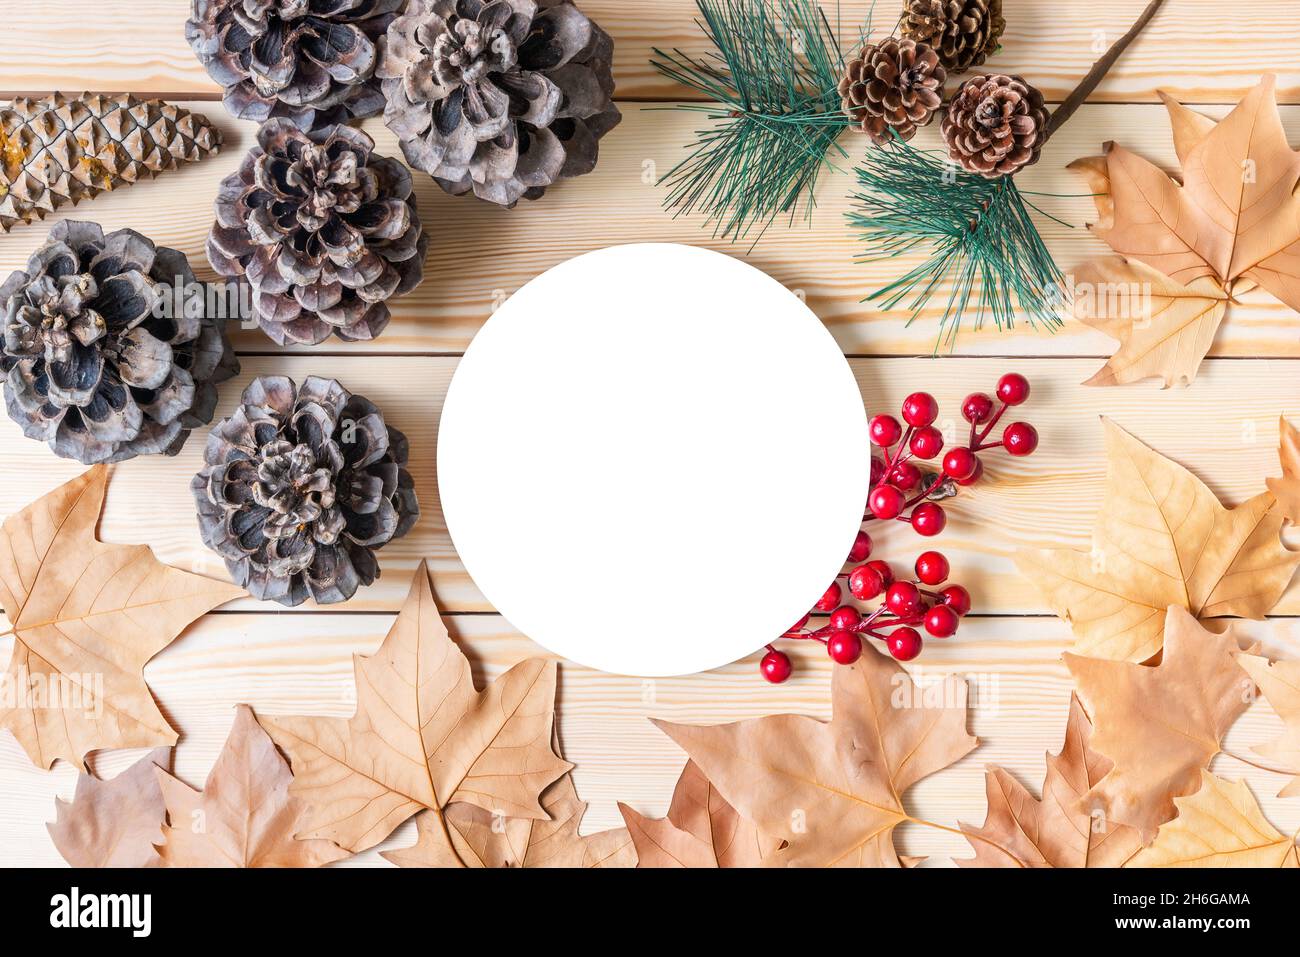 Arrière-plan traditionnel de Noël de bois de pin avec feuilles séchées, pommes de pin et GUI avec un cercle blanc central pour placer des messages de Noël, vente Banque D'Images